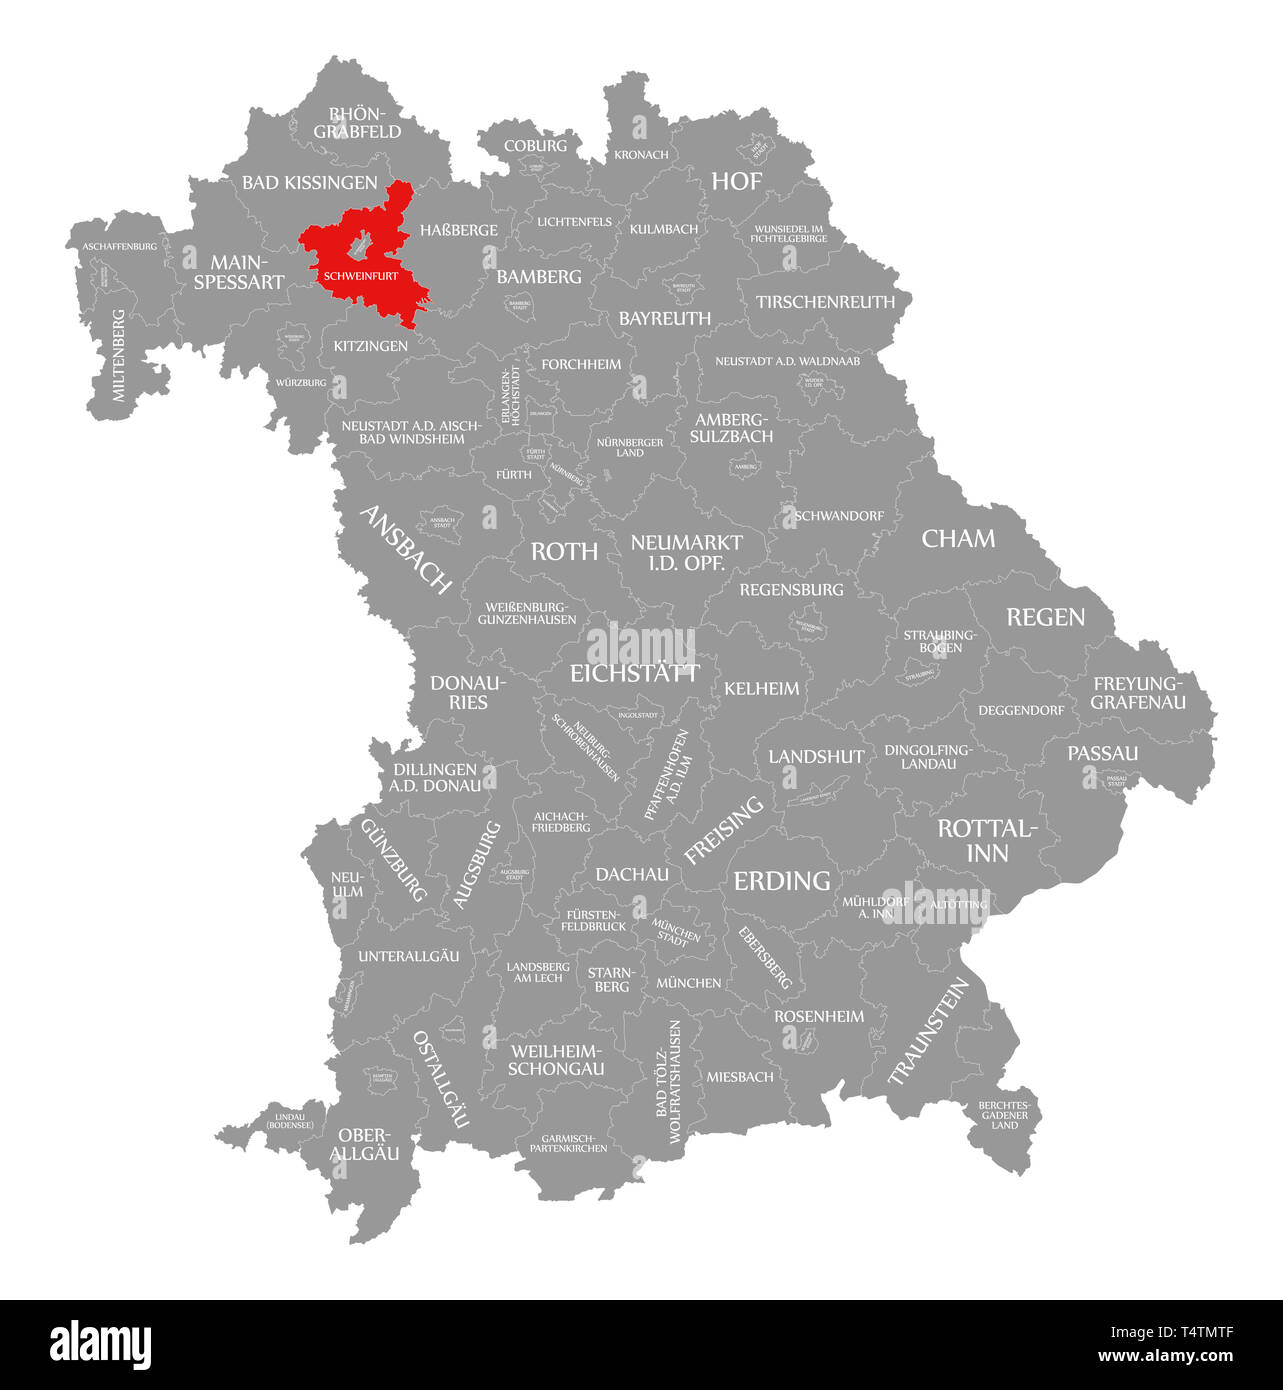 Schweinfurt County in Rot hervorgehoben Karte von Bayern Deutschland Stockfoto